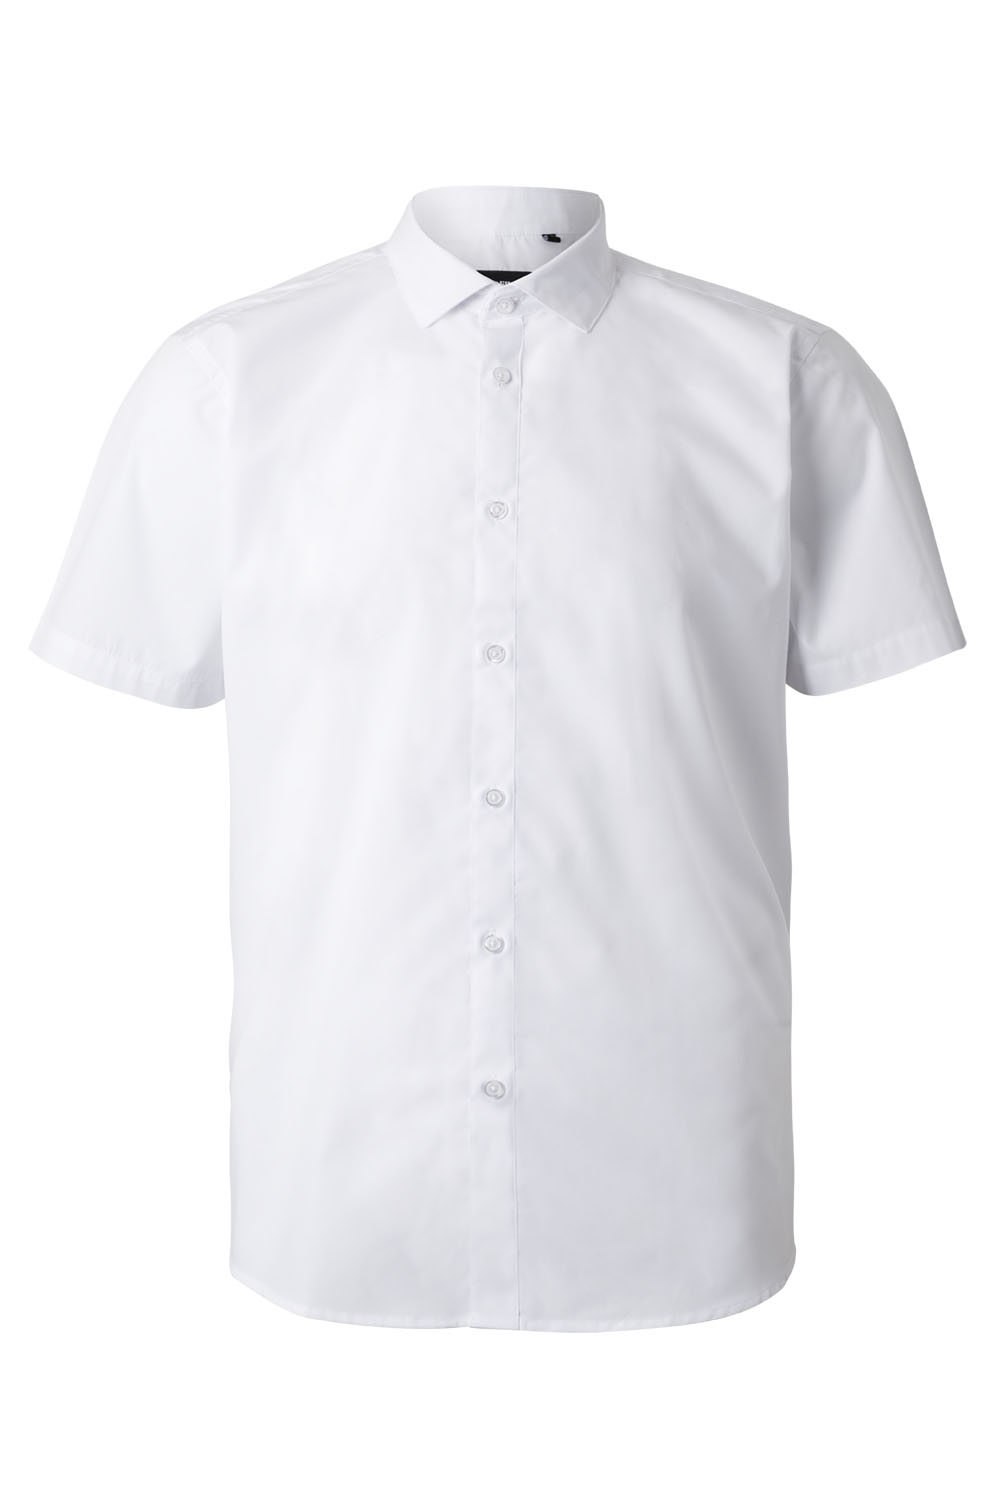 E-shop VELILLA GROUP EUROPE S.L.U. Pánska čašnícka košeľa krátky rukáv- biela L